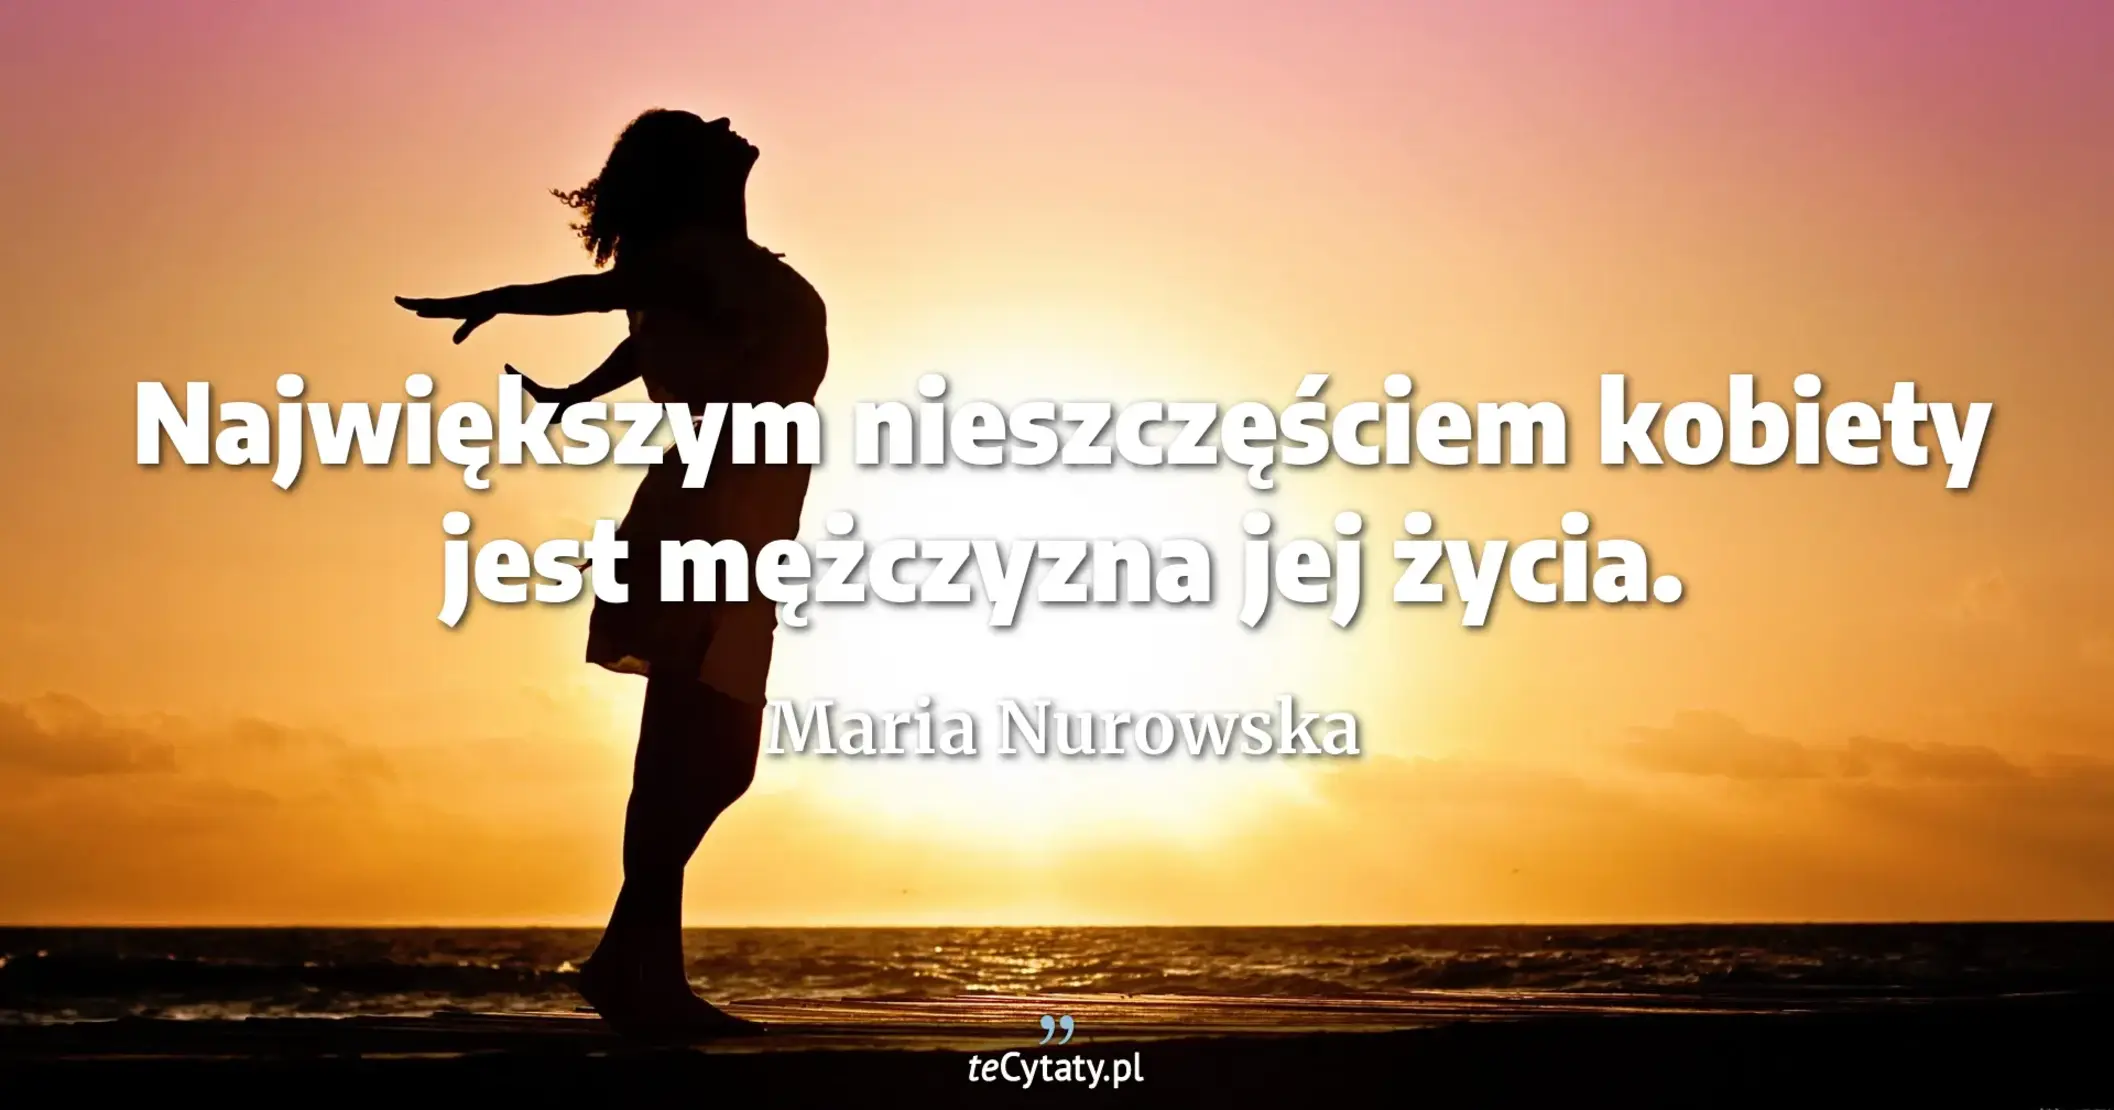 Największym nieszczęściem kobiety jest mężczyzna jej życia. - Maria Nurowska